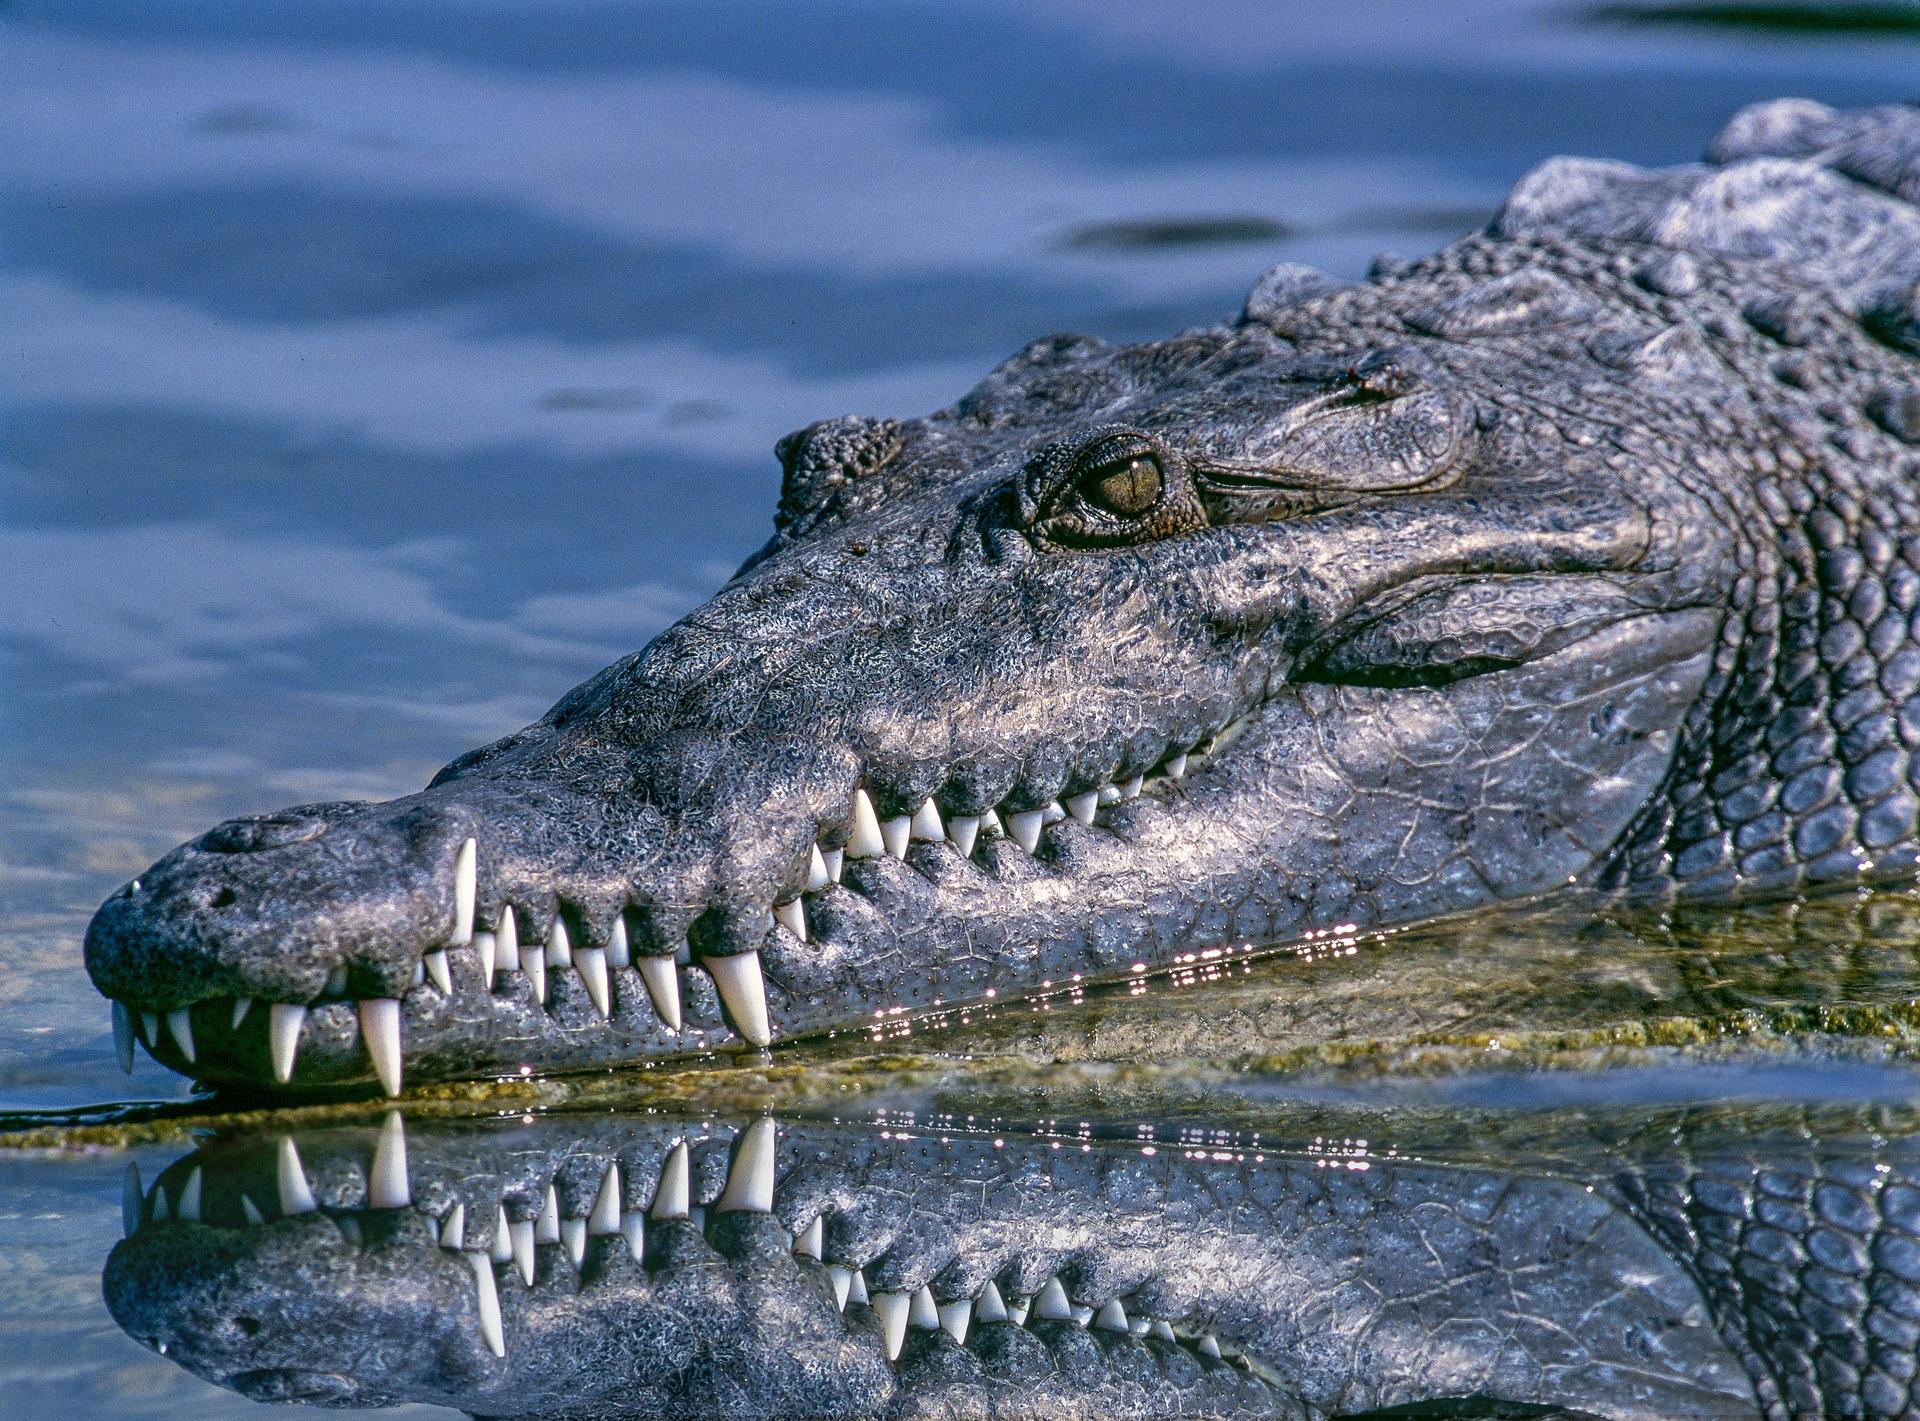 hlava krokodýla